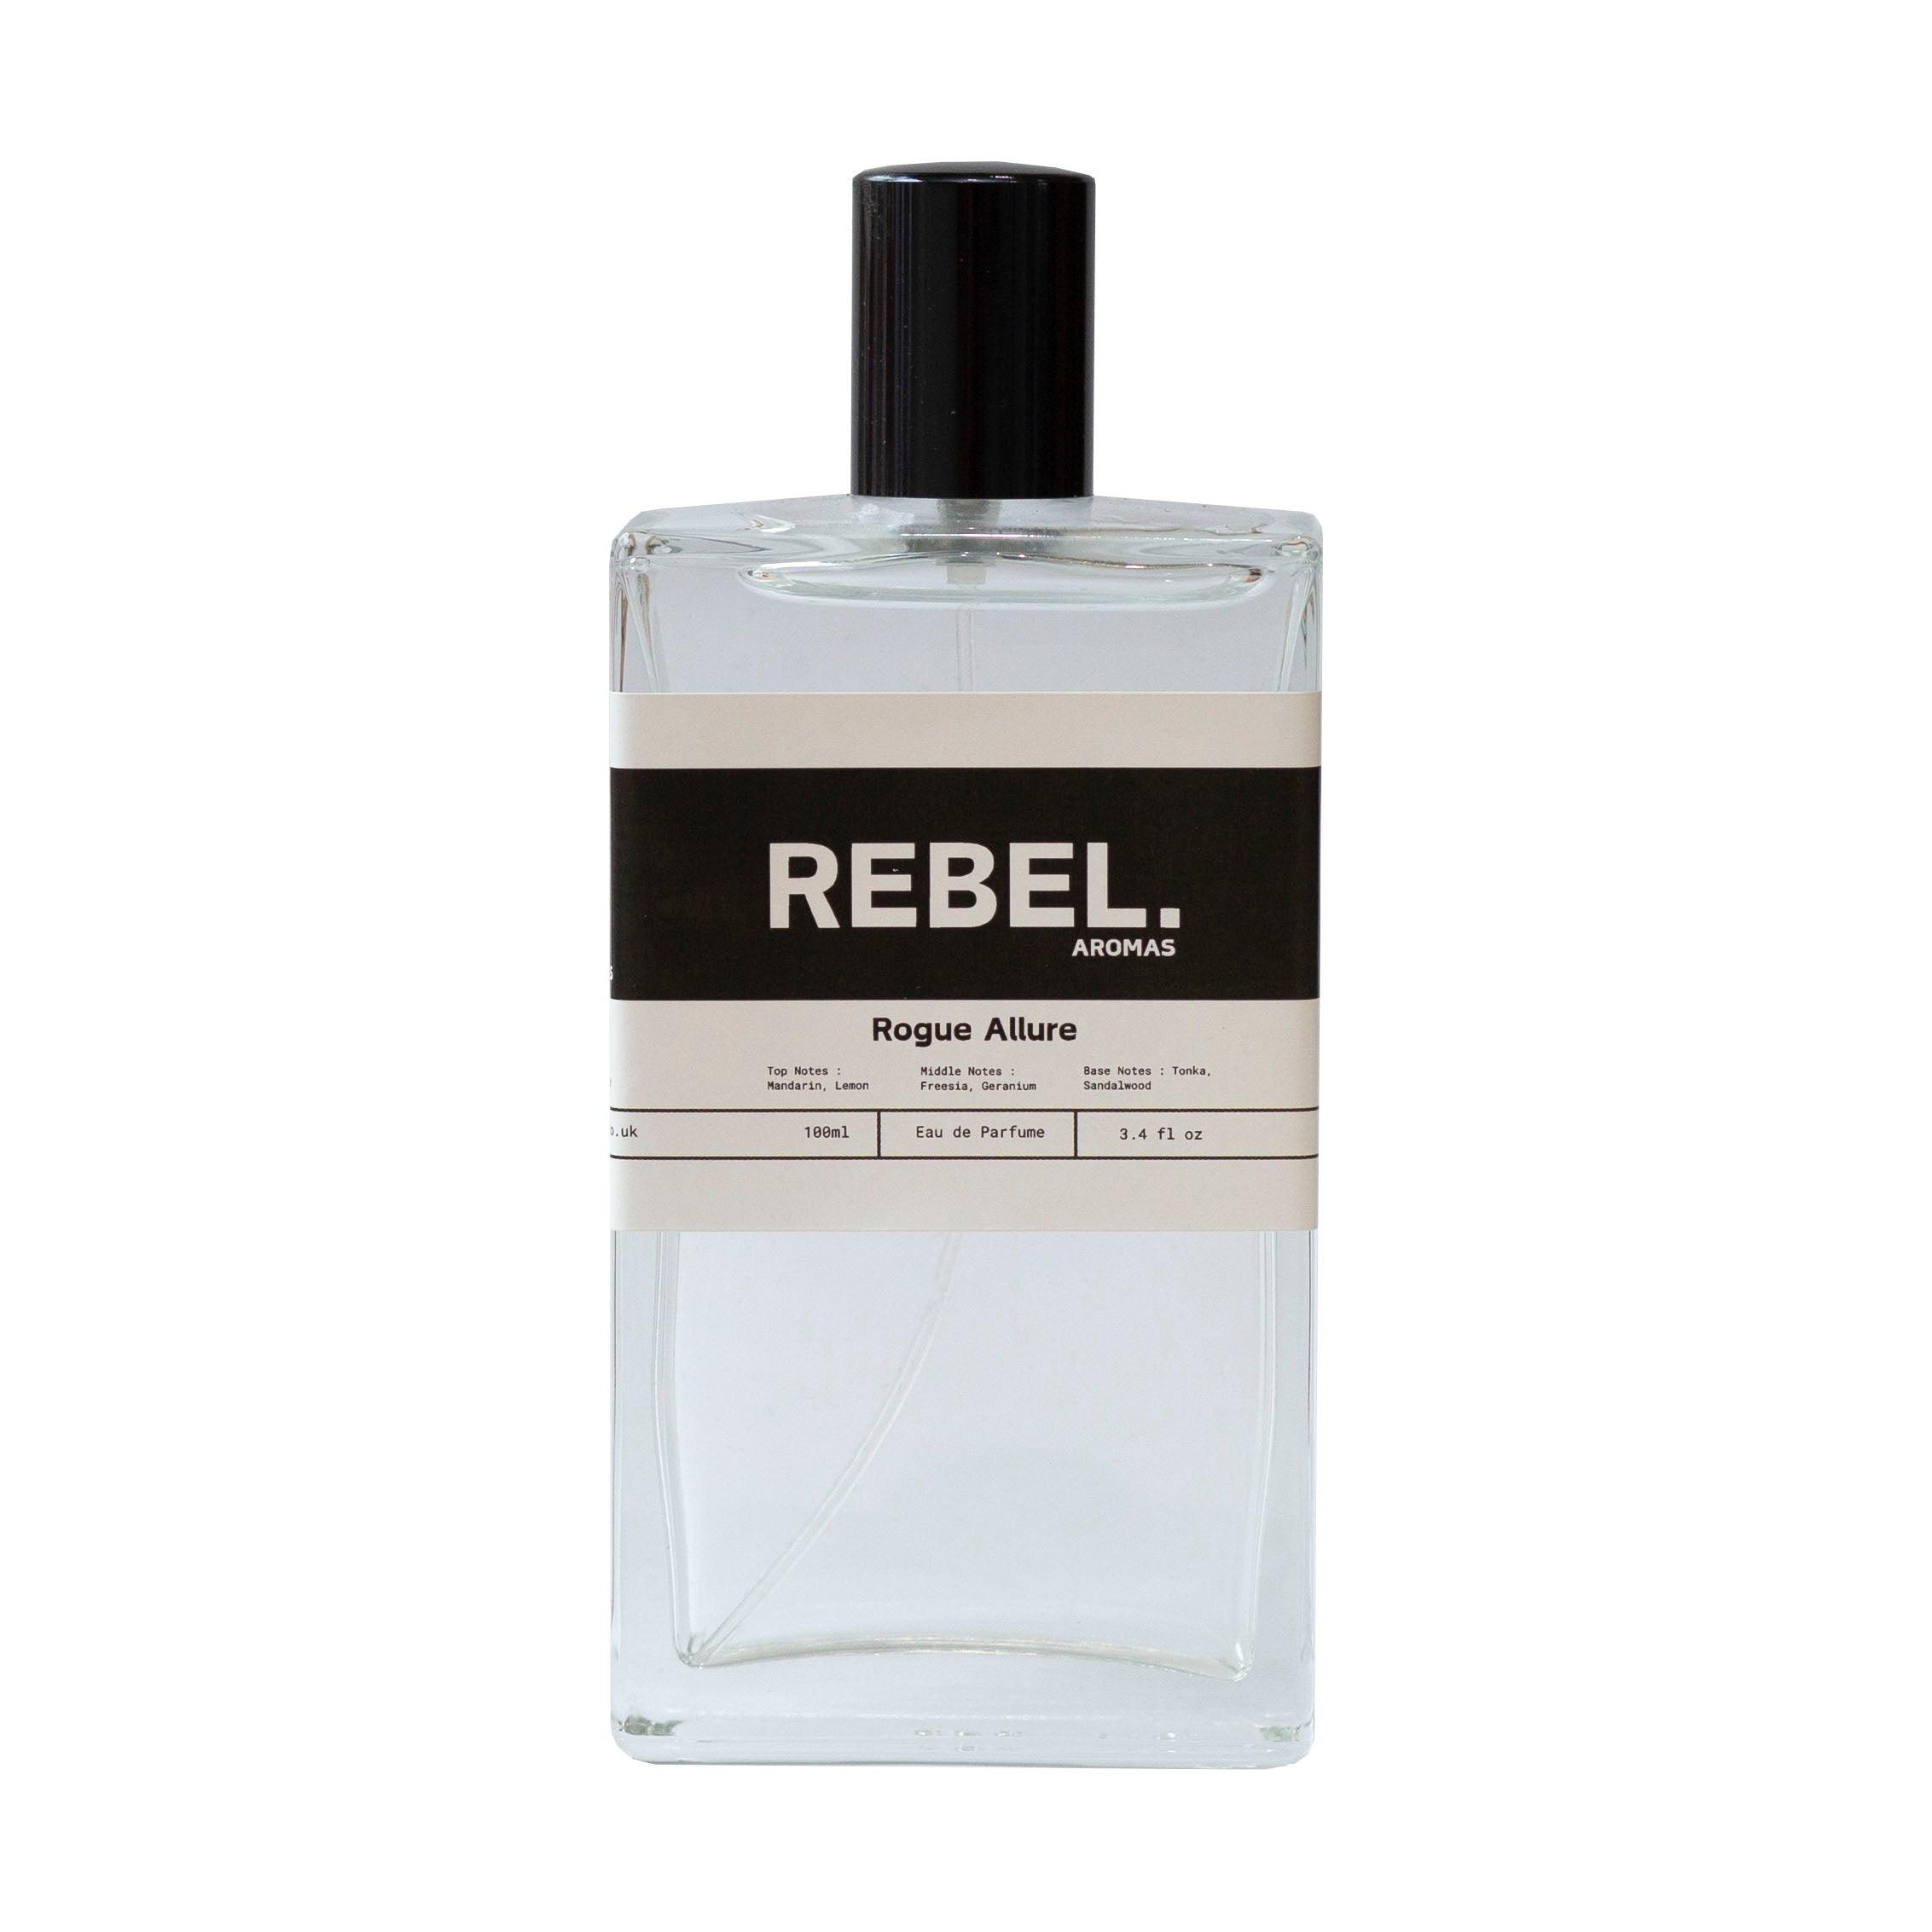 Rogue Allure - Rebel Aromas